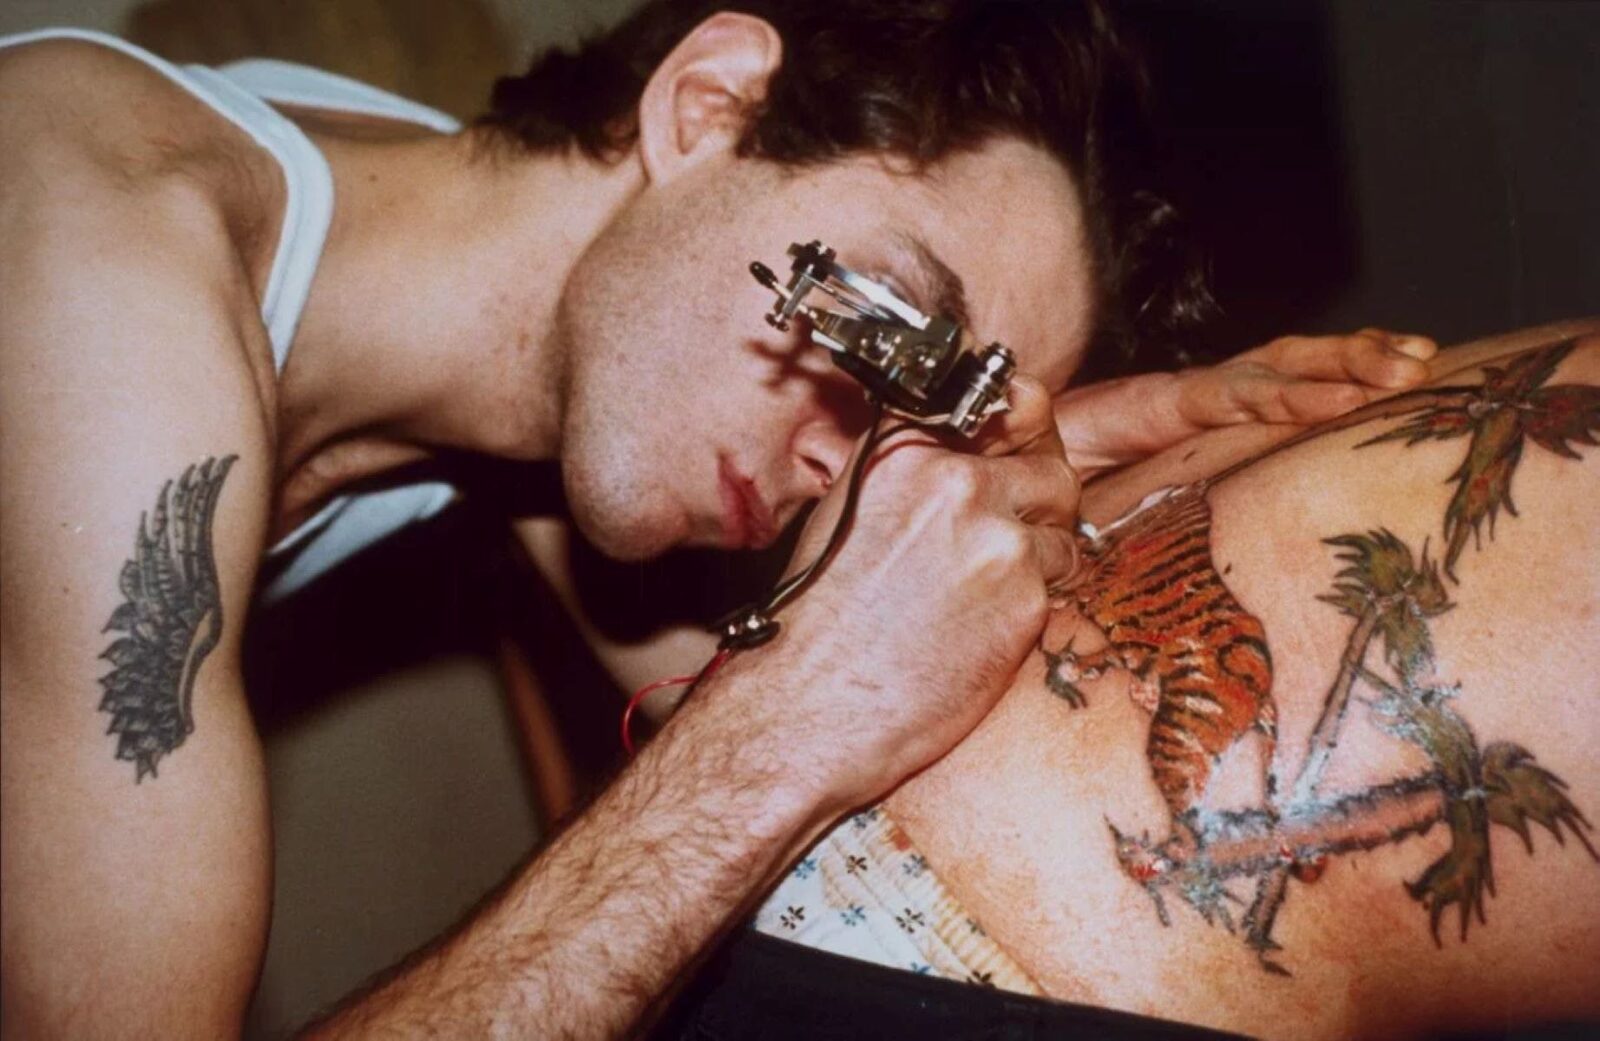 Tattoo artist tattooing a man's back